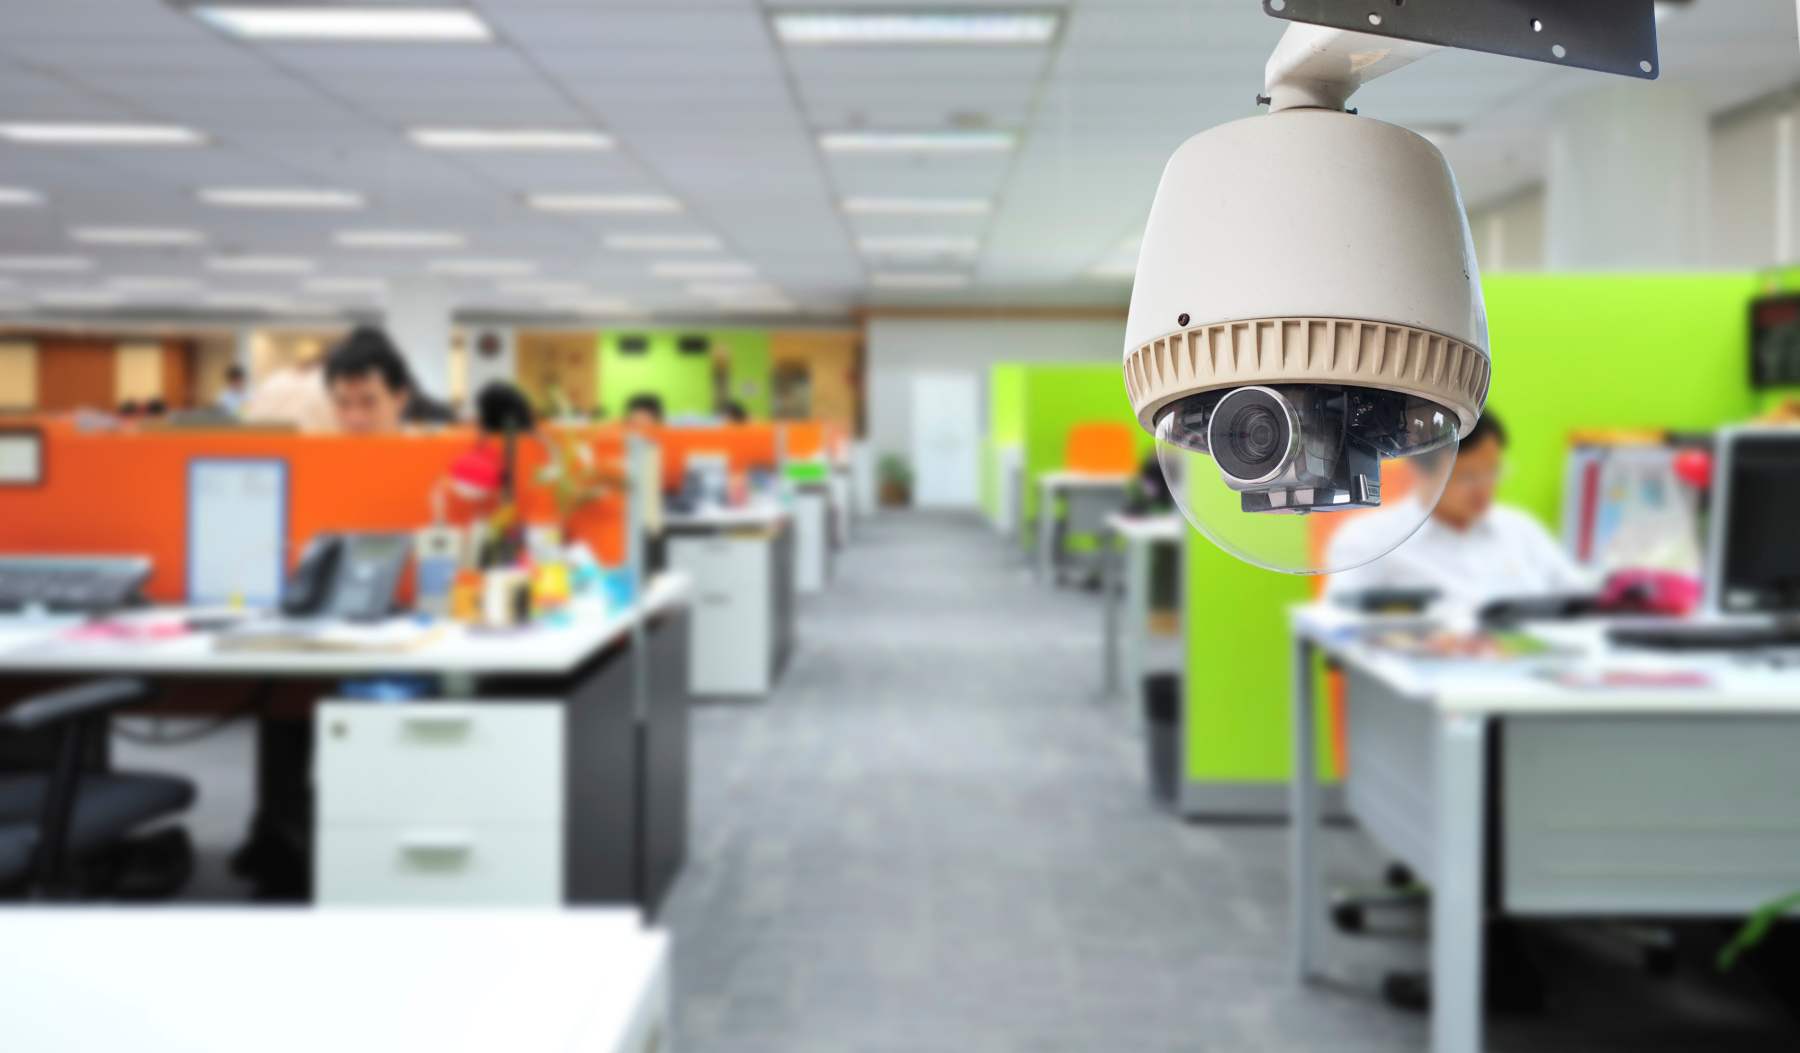 Преимущества наличия системы видеонаблюдения в офисе